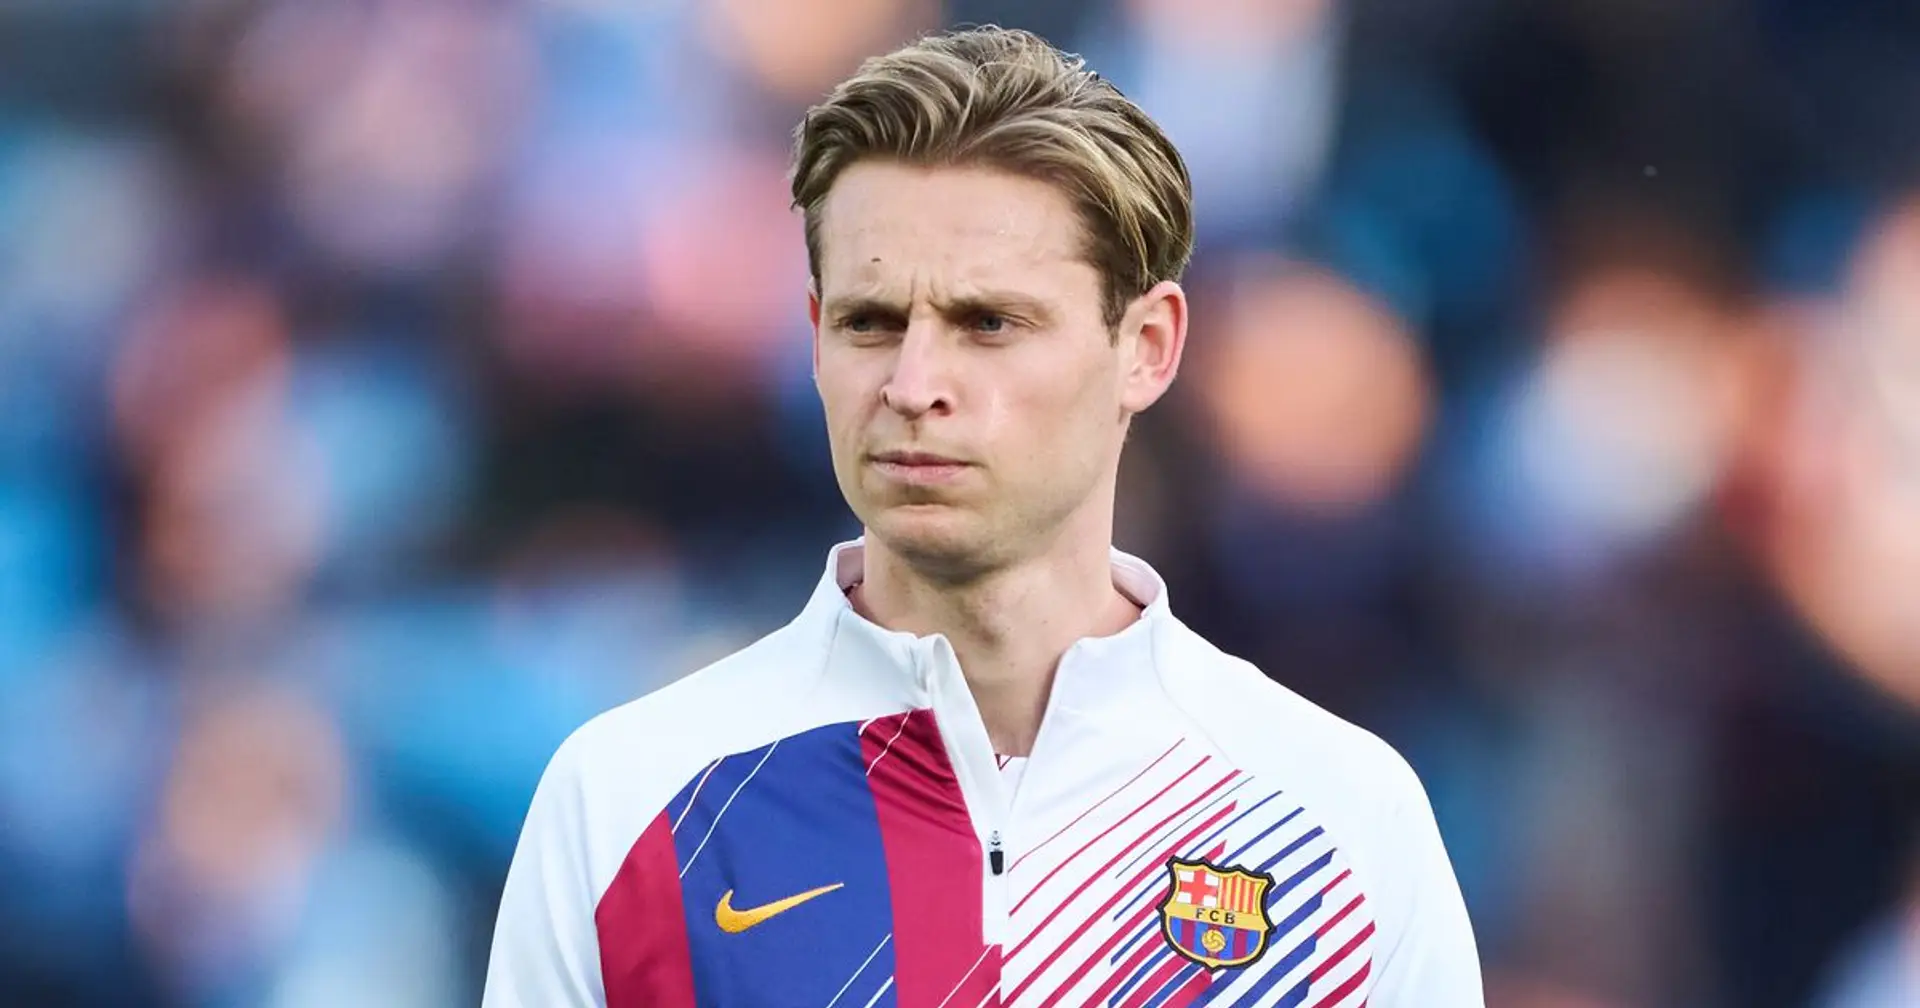 Revealed: Barcelona's stance on Frenkie De Jong amid Man United interest